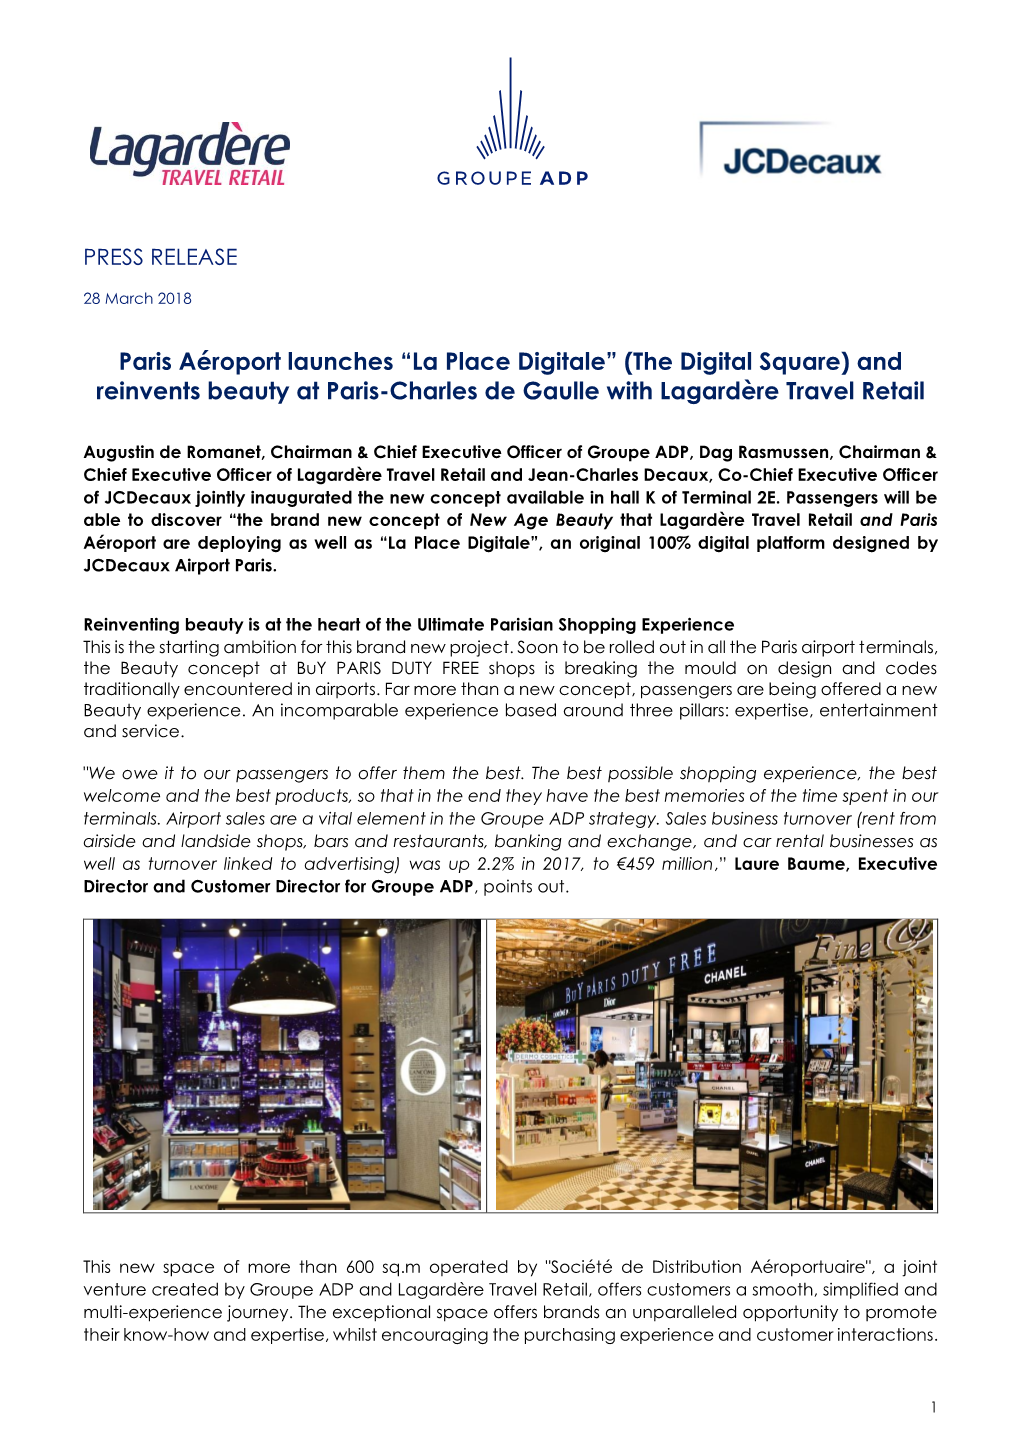 Paris Aéroport Launches “La Place Digitale” (The Digital Square) and Reinvents Beauty at Paris-Charles De Gaulle with Lagardère Travel Retail